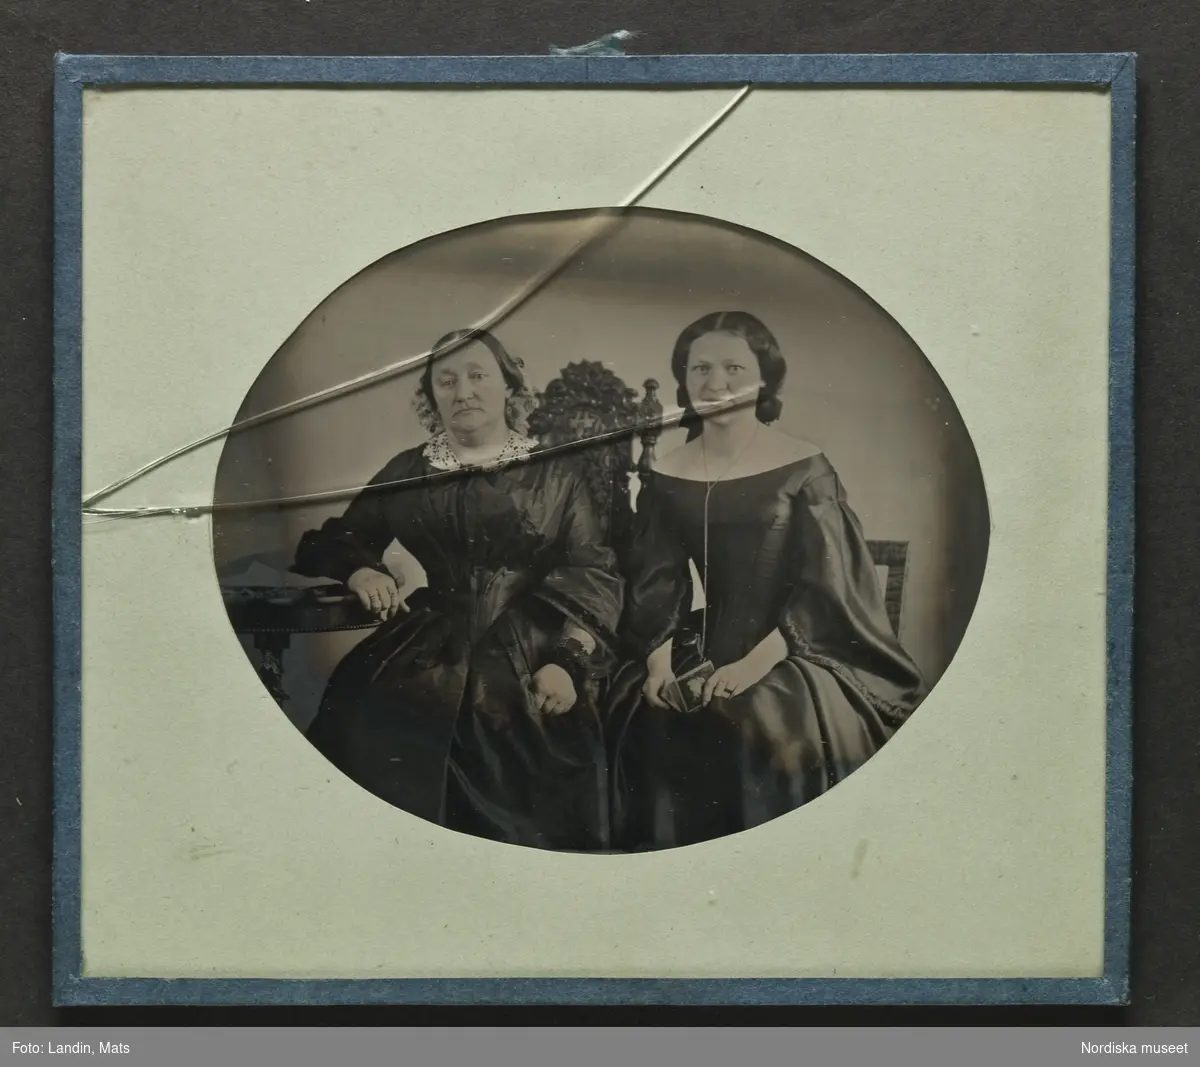 Porträtt av två okända kvinnor. Ambrotyp, ca 1860. Nordiska museet inv.nr 231626.